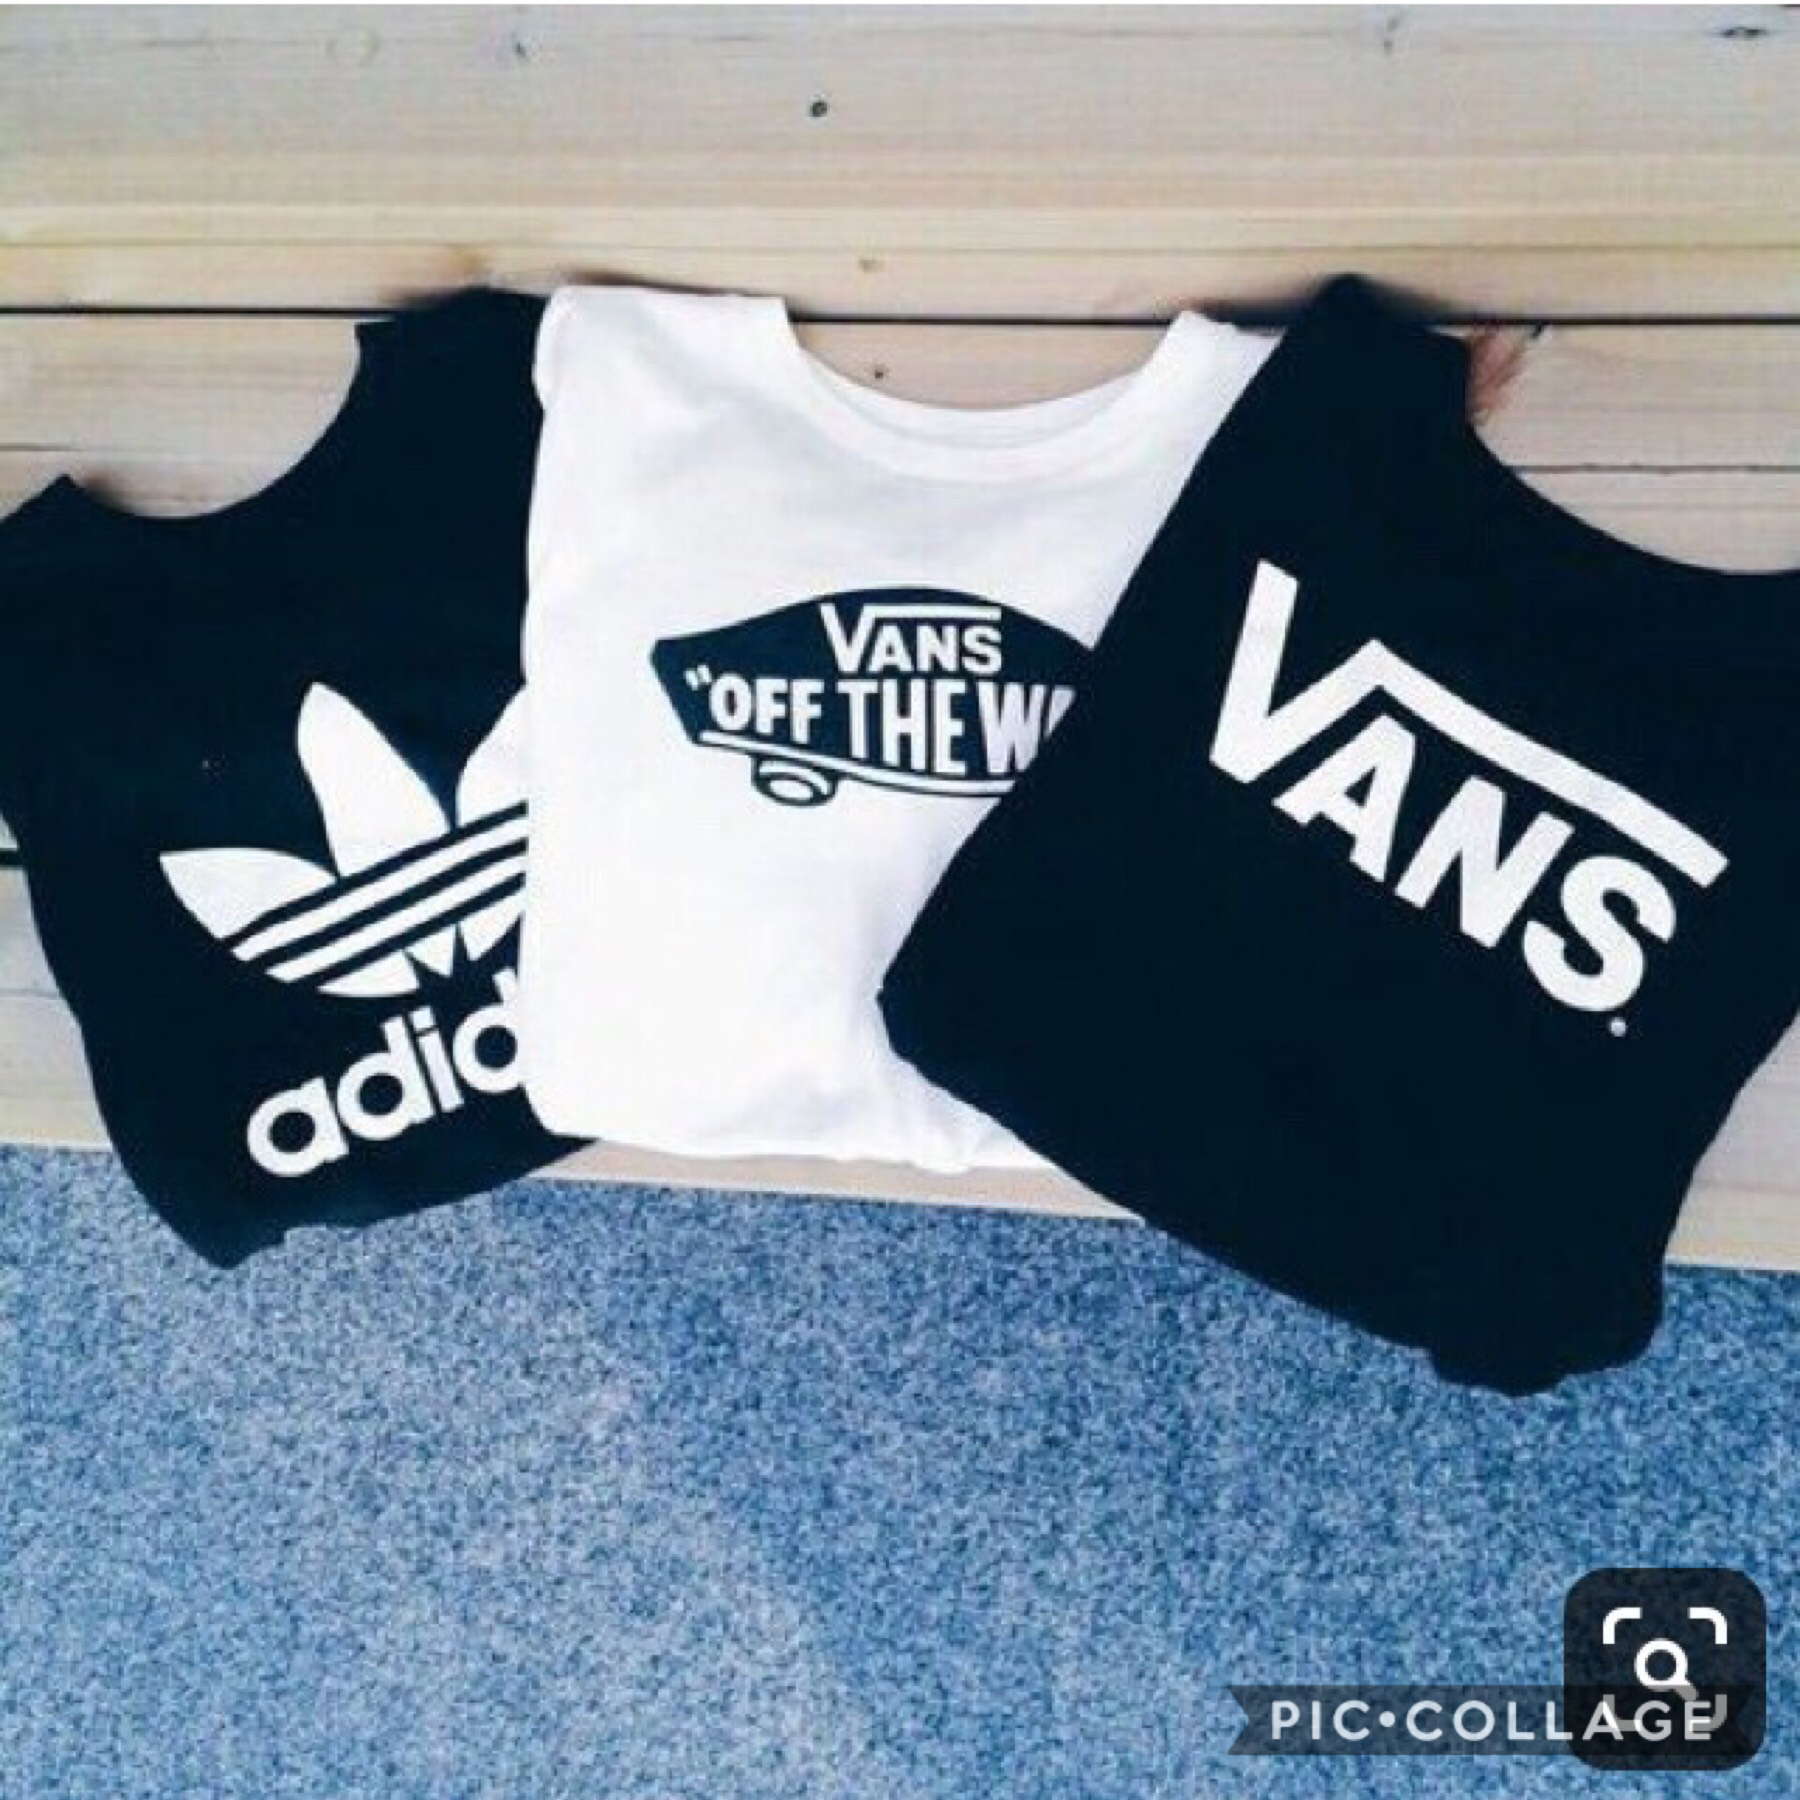 Vans and Adidas t-shirts
5-25-19